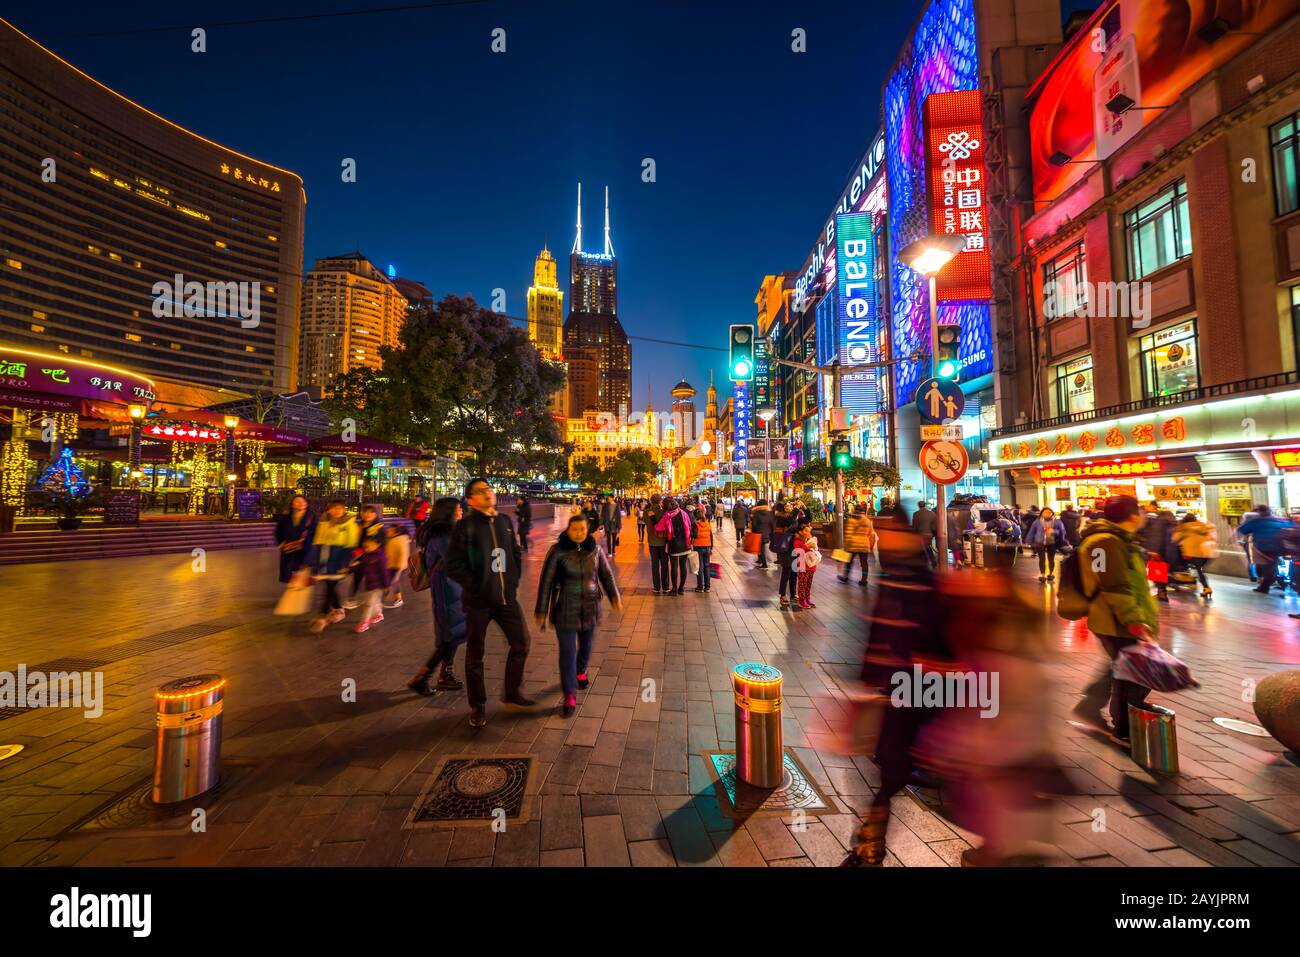 Shanghai, CHINA - 13. FEBRUAR 2018: Auf der Nanjing Road leuchten Neonschilder. Die Gegend ist das Haupteinkaufsviertel Shanghais und eines der geschäftigsten der Welt Stockfoto